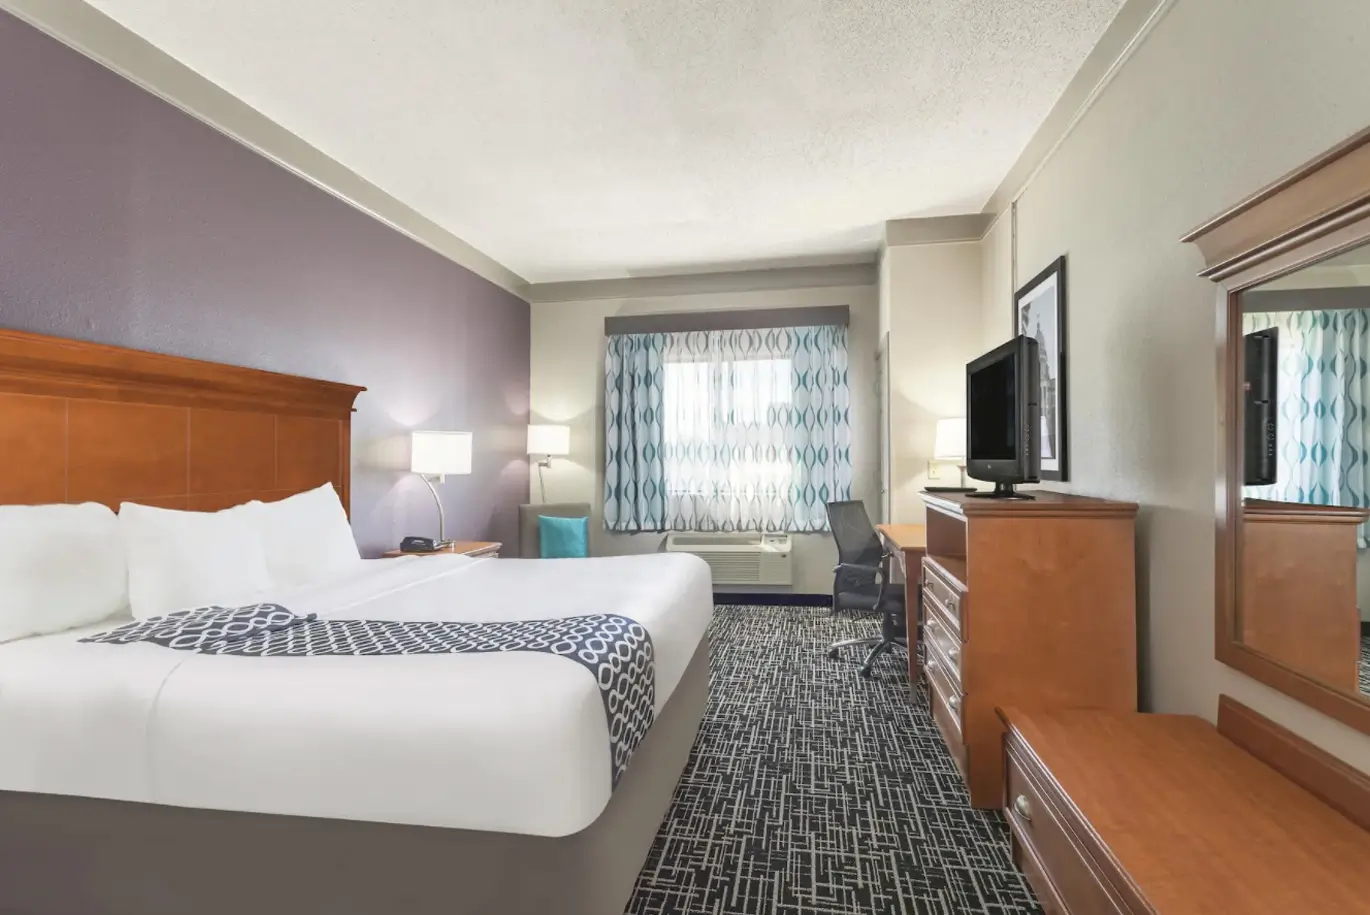 Hotel Room Reservation in Mississippi